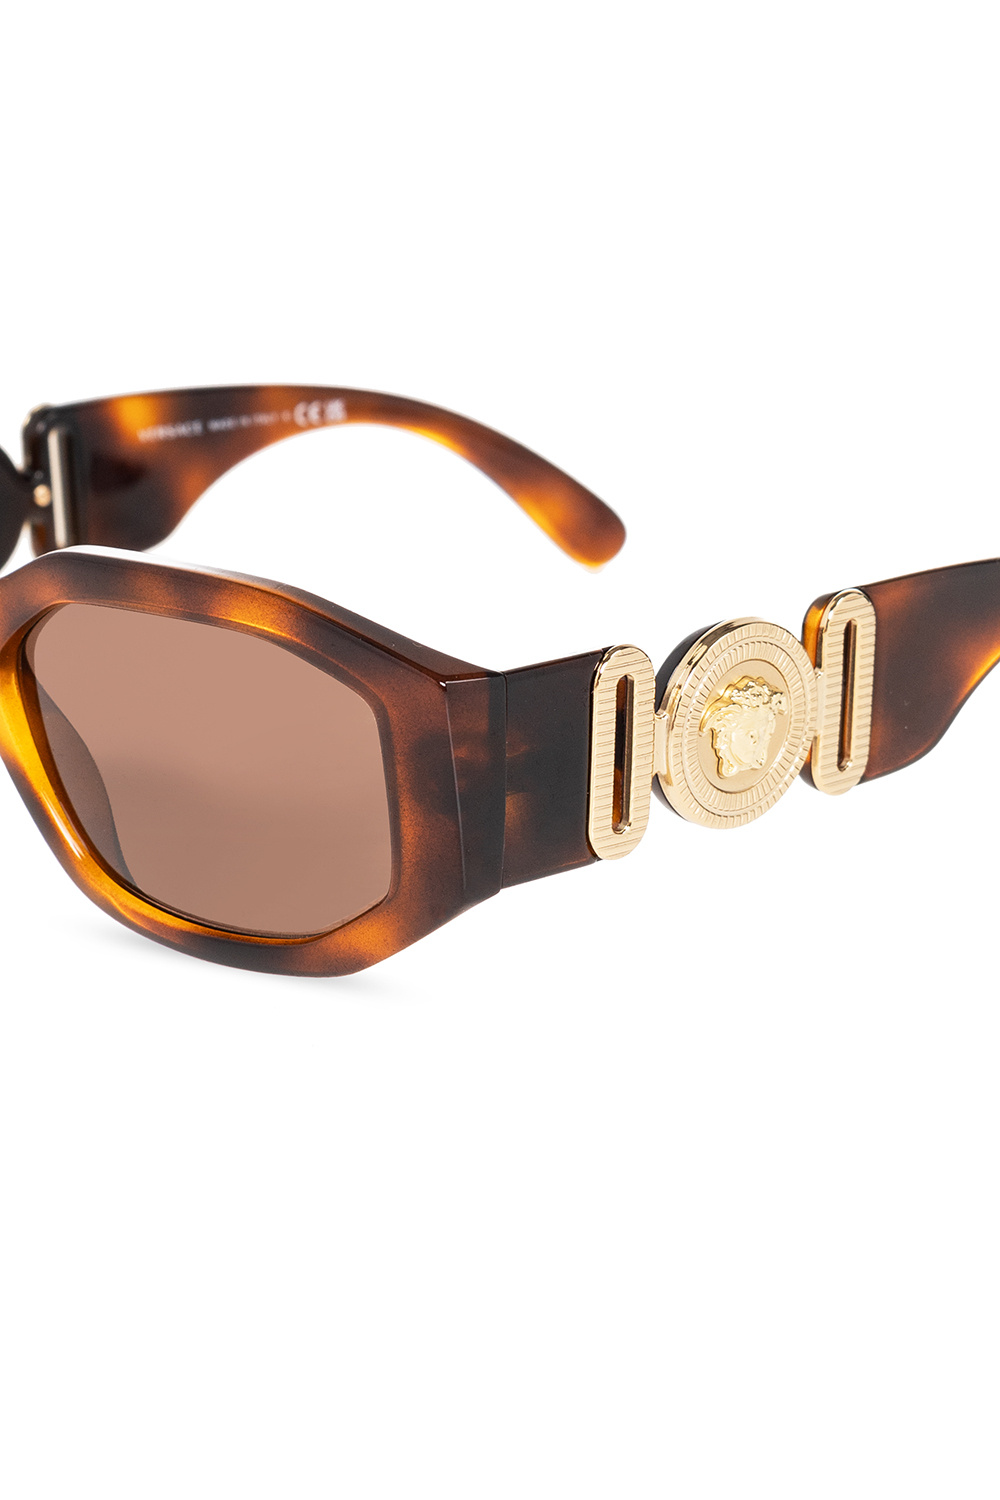 sunglasses NEUF C - Grandmaster Two sunglasses Versace - GenesinlifeShops TW